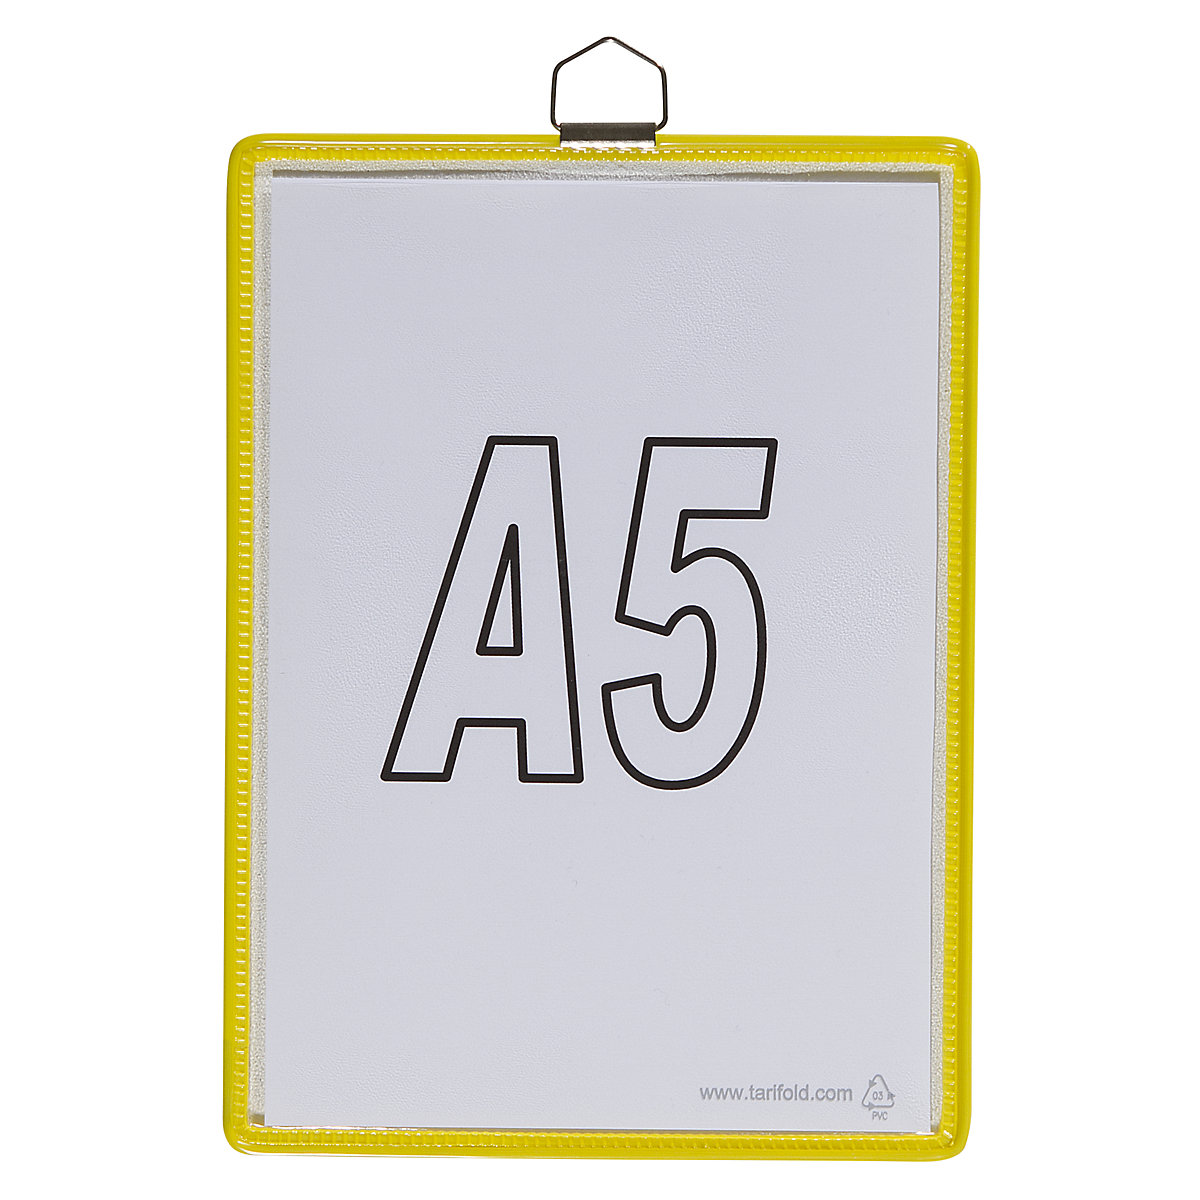 Hänge-Klarsichttasche Tarifold, für Format DIN A5, gelb, VE 10 Stk-5